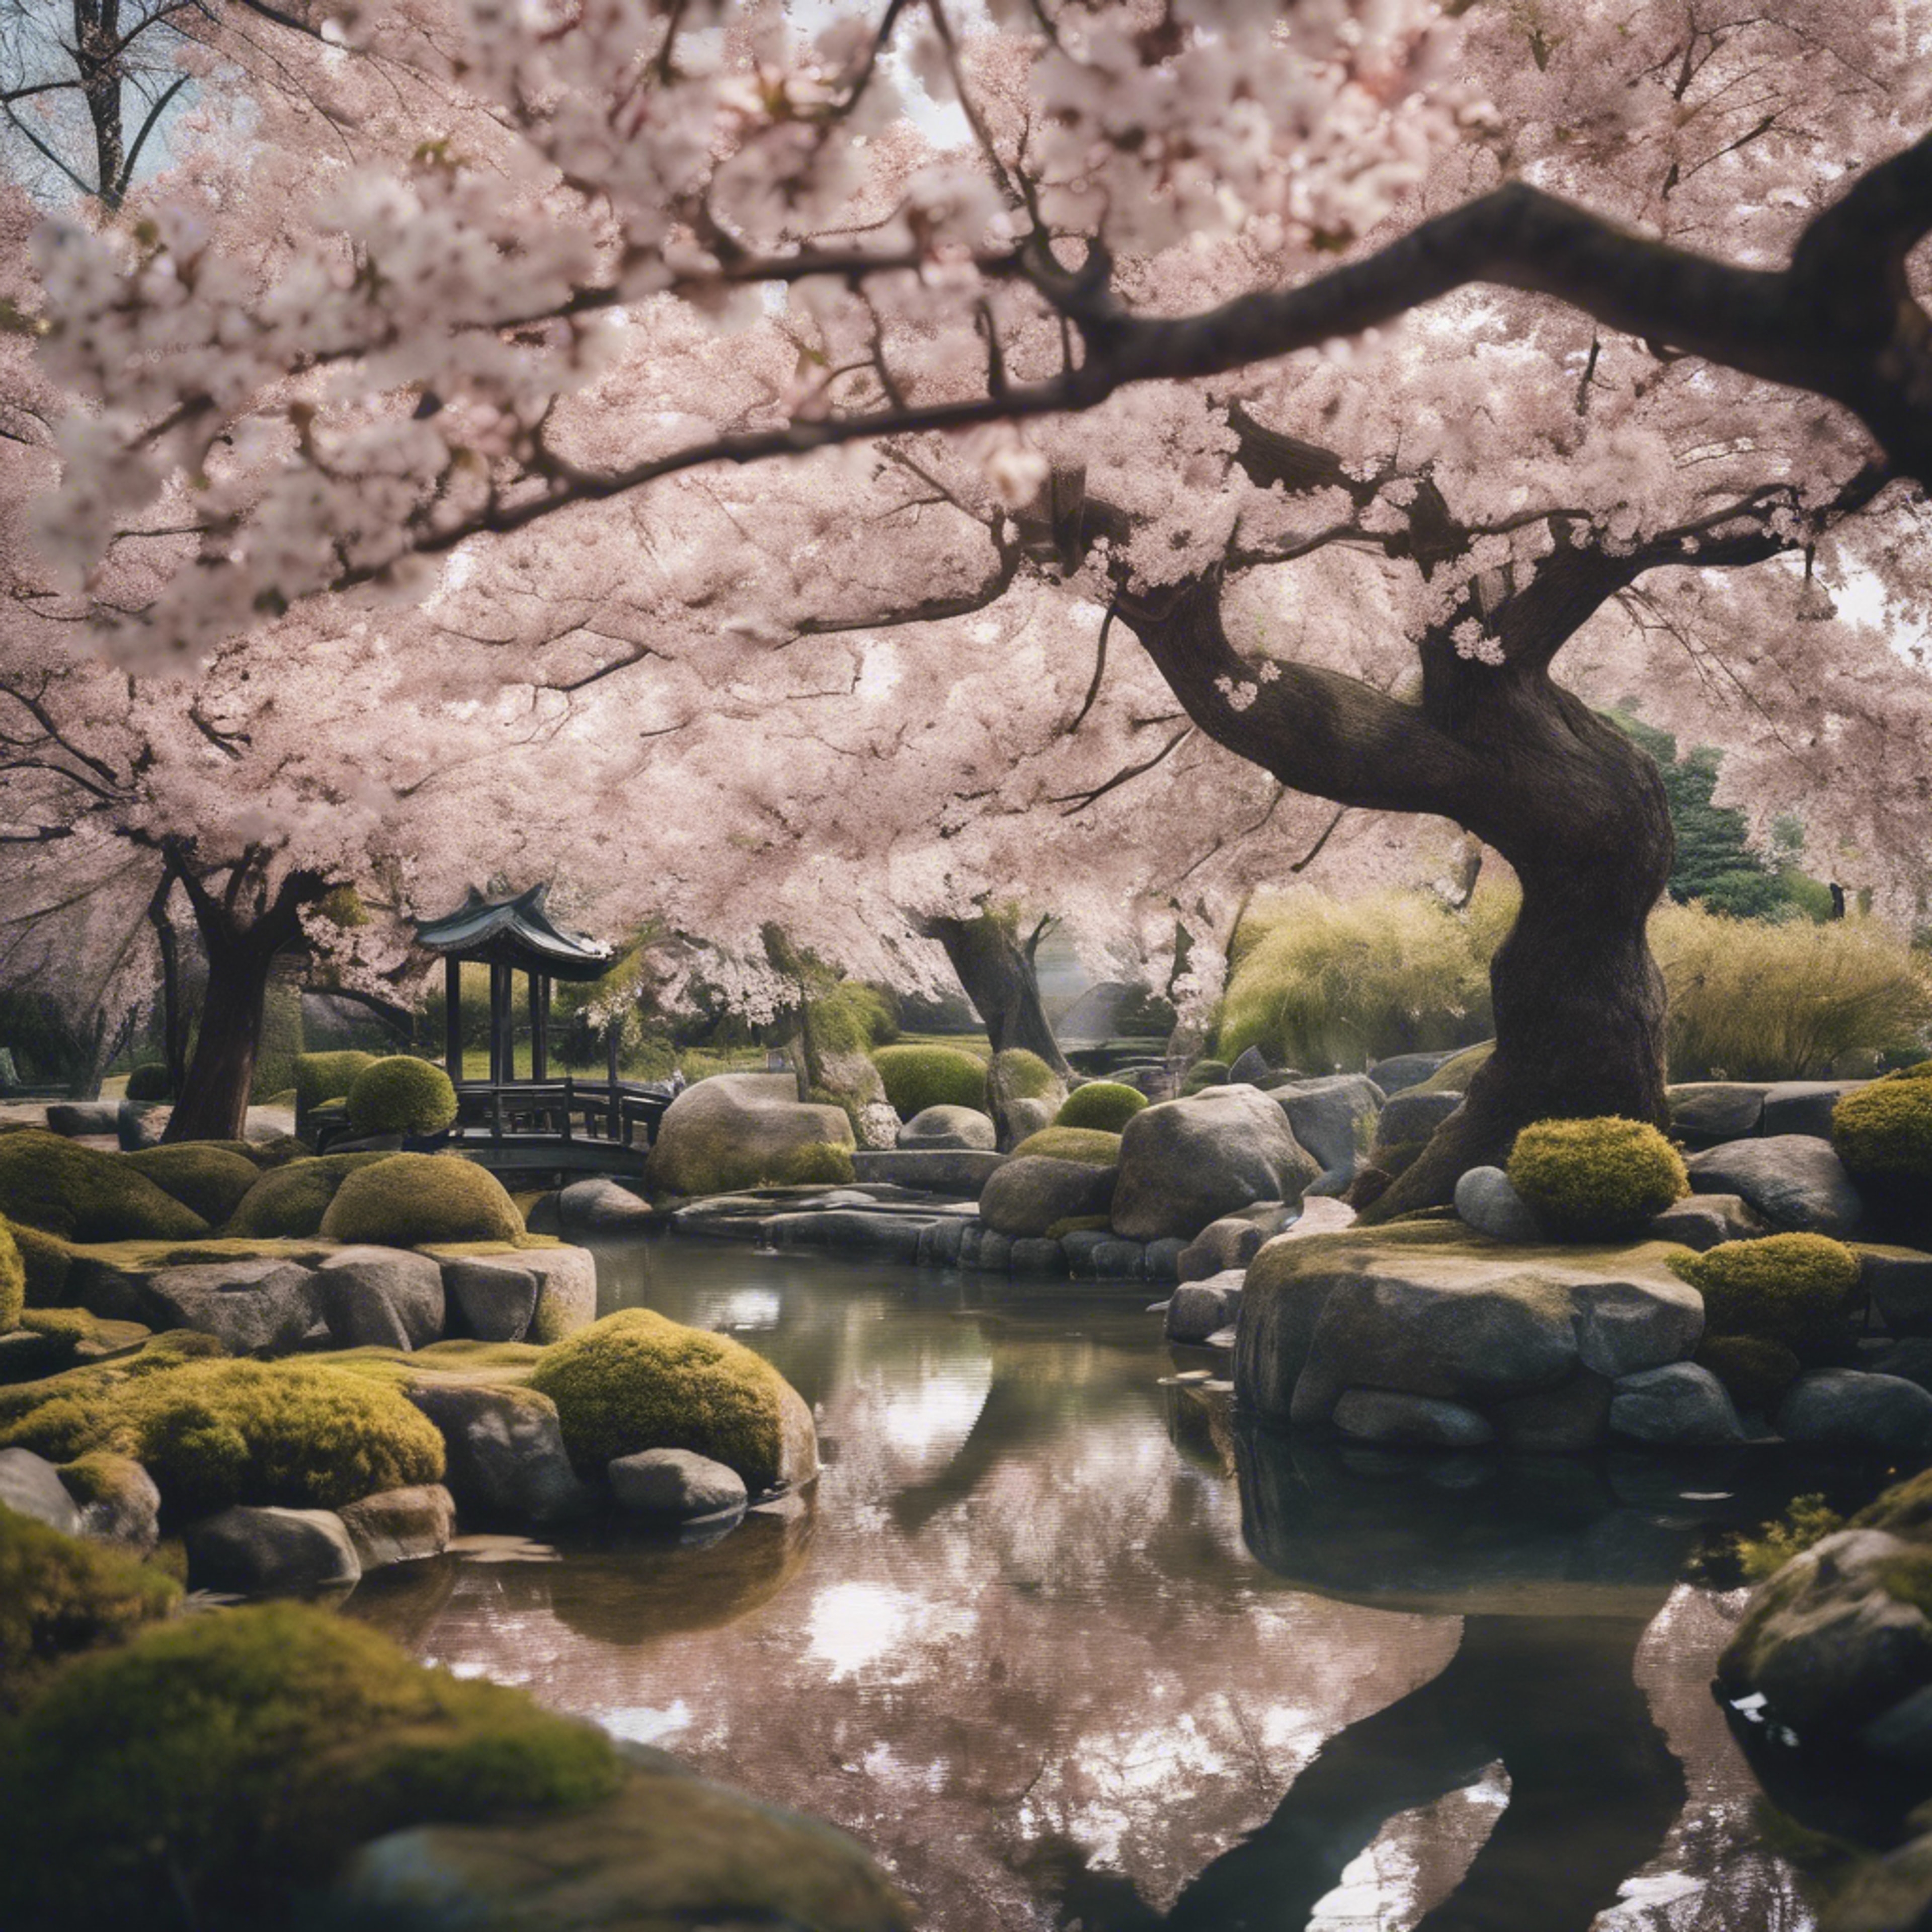 A wide-angle view of a serene Japanese garden with cherry blossoms in full bloom. Divar kağızı[cf6d4e9694a4479cb5ff]